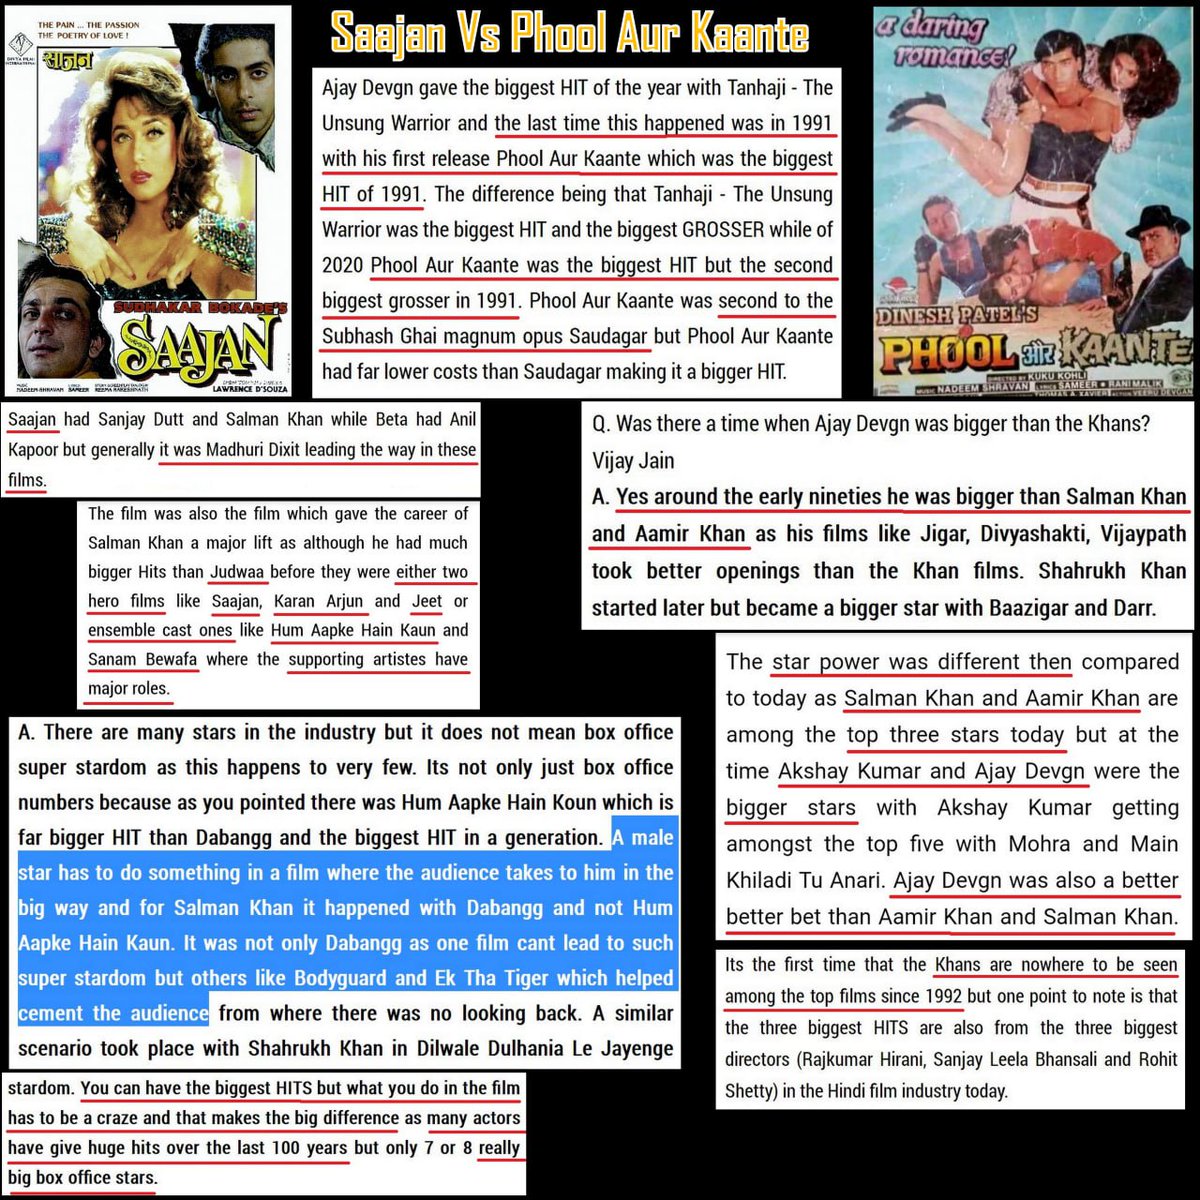 #PhoolAurKaante Vs #Saajan 

Ajay Devgan in 90s > Salman Khan